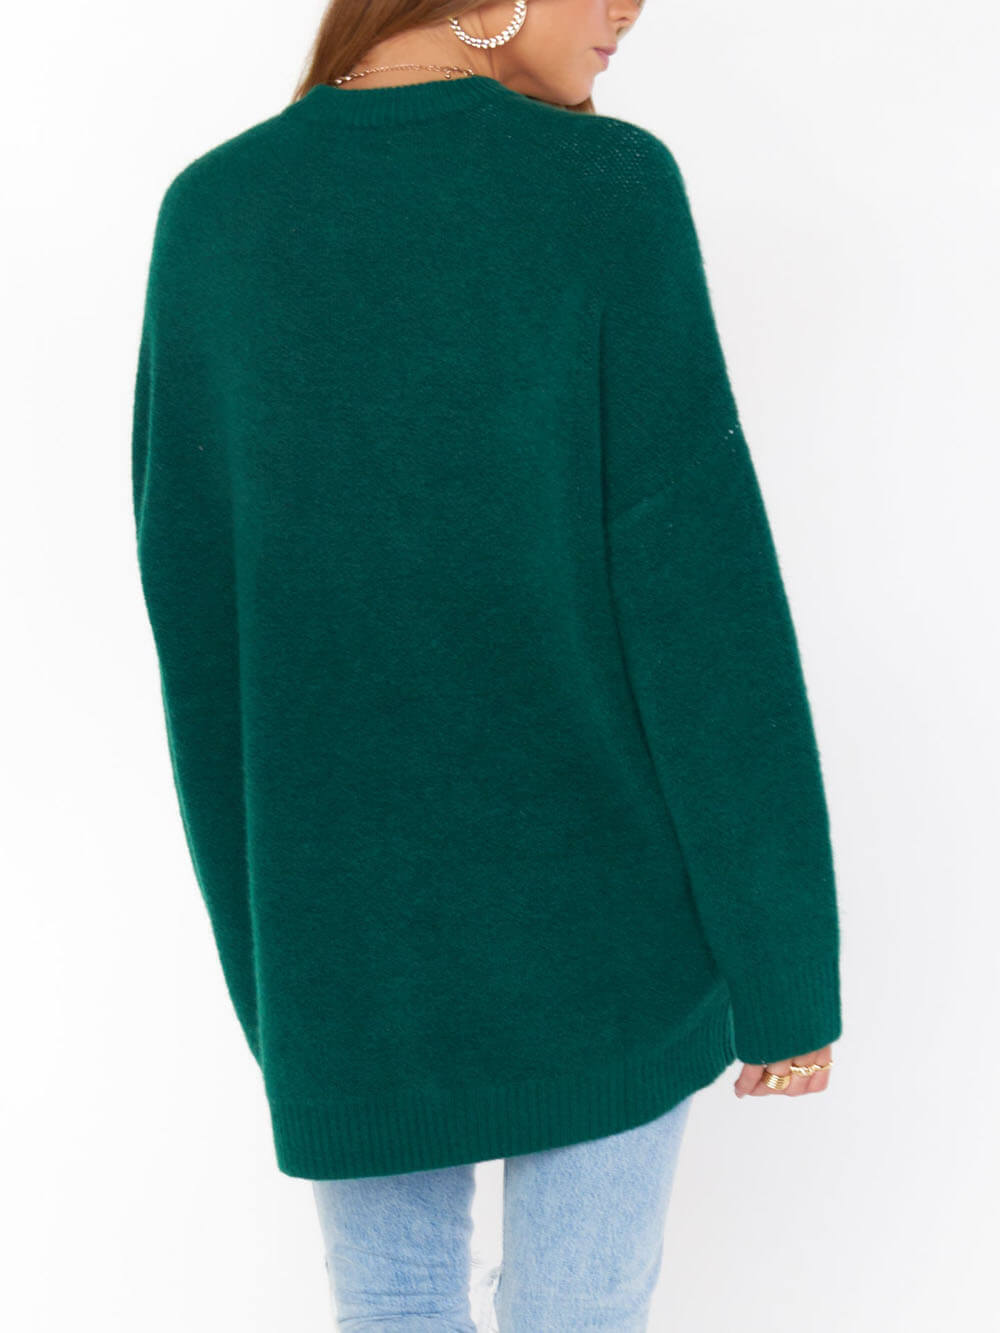 Suéter clássico com gola redonda